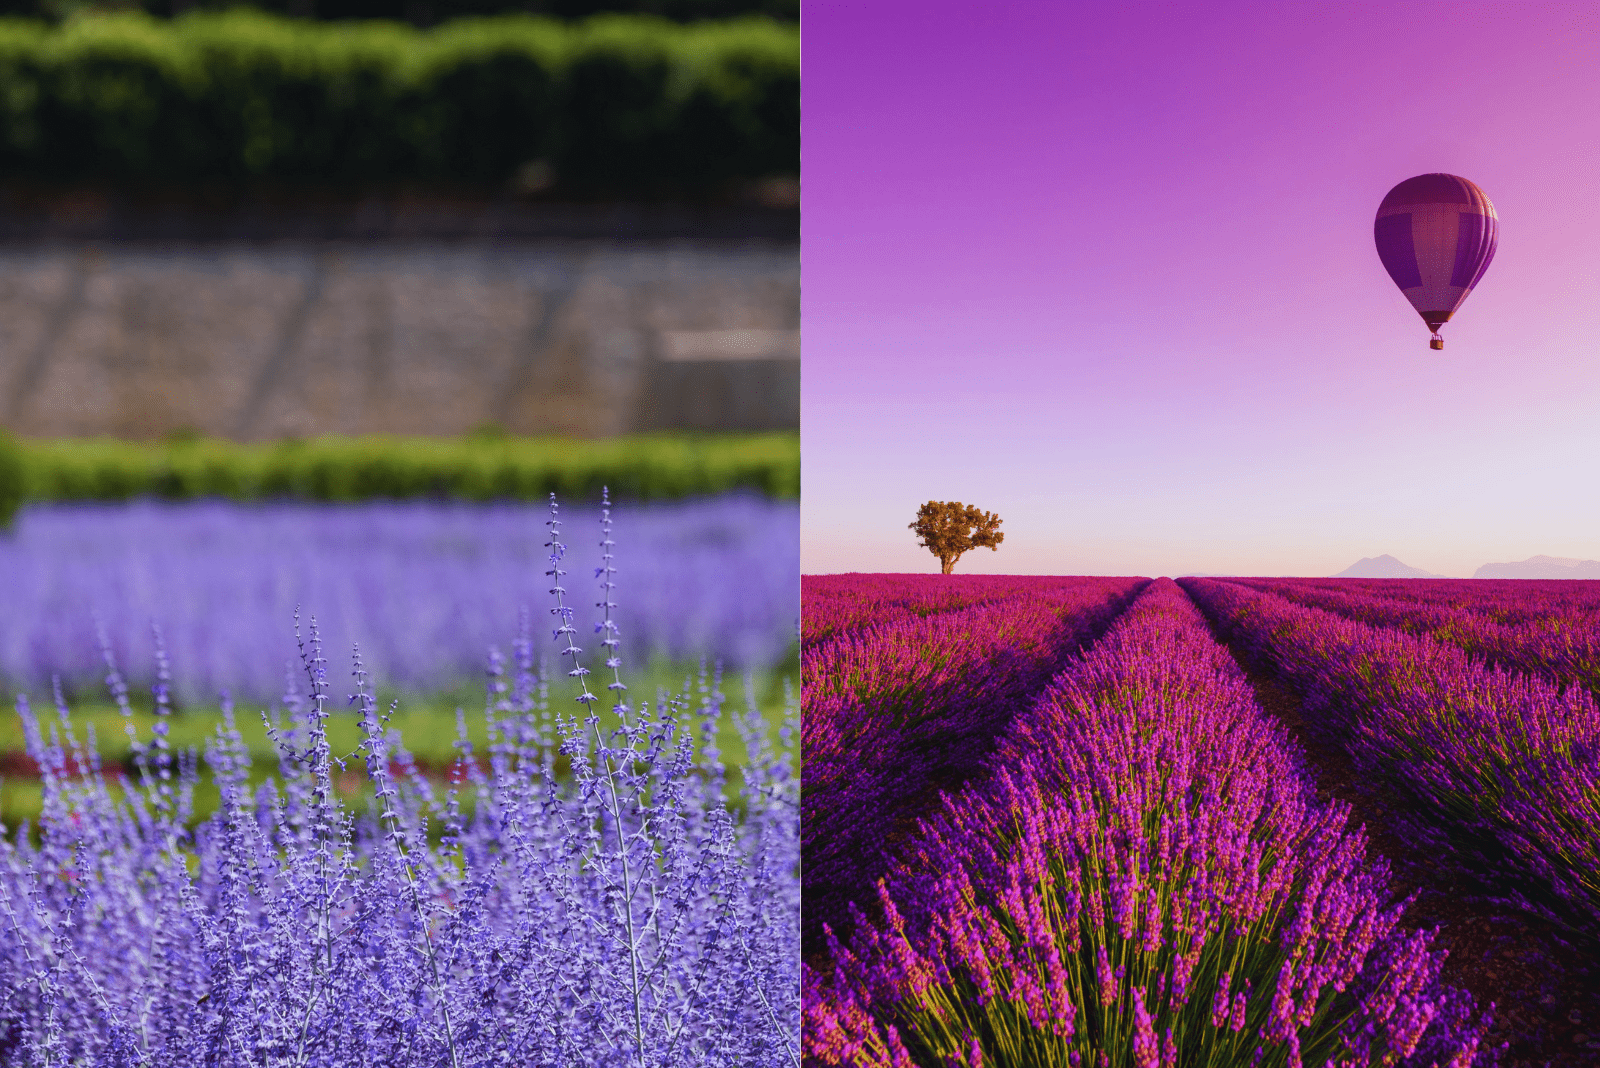 Russian Sage vs Lavender